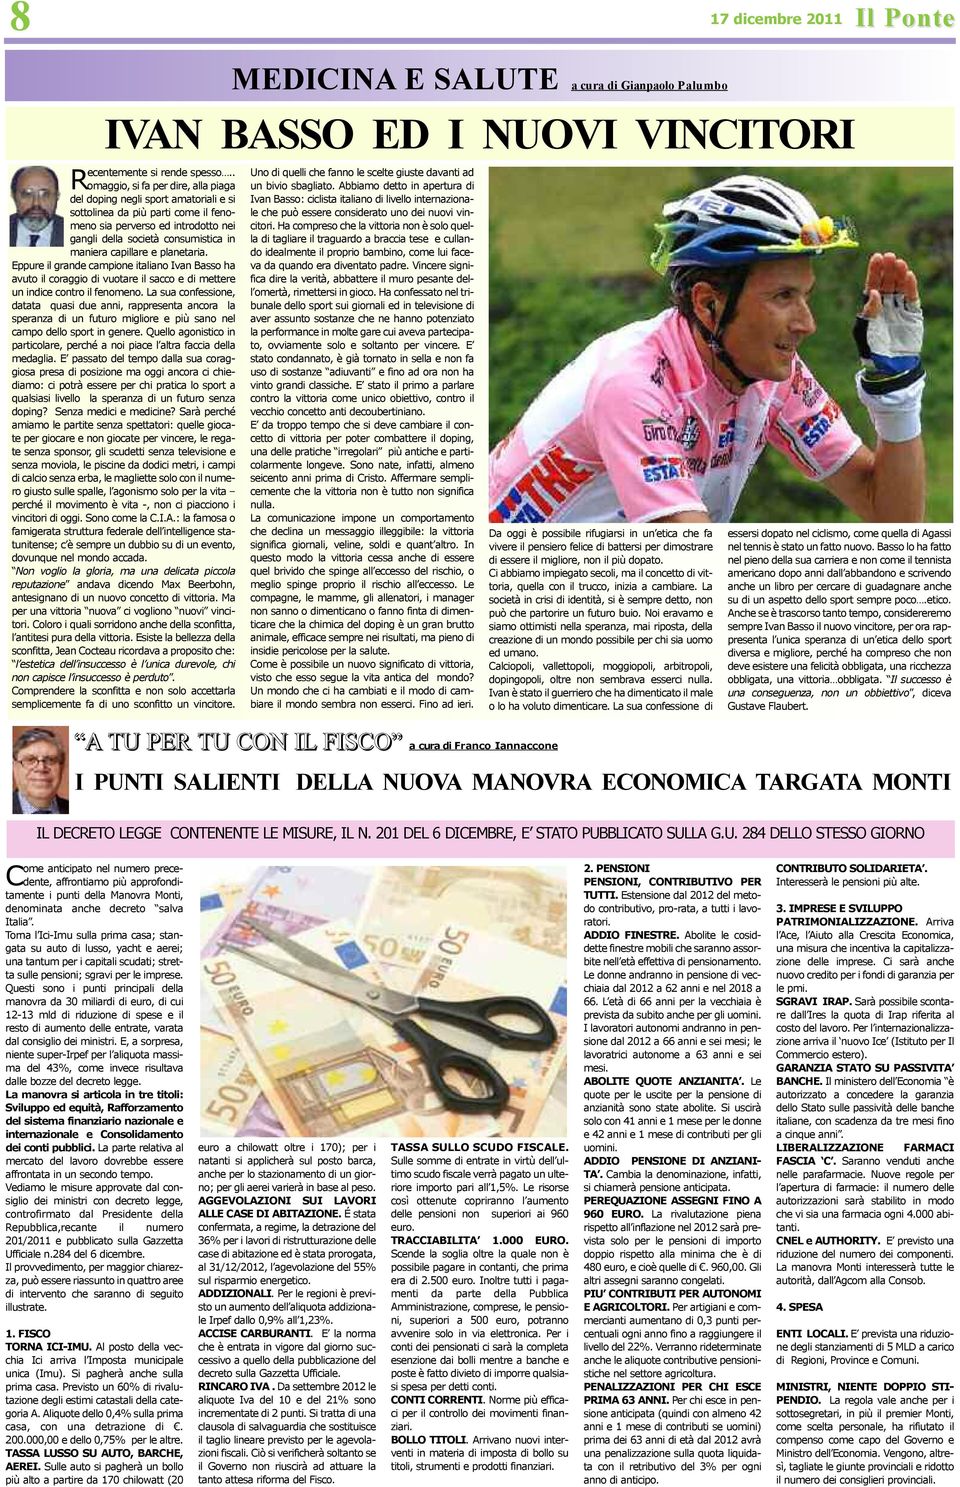 capillare e planetaria. Eppure il grande campione italiano Ivan Basso ha avuto il coraggio di vuotare il sacco e di mettere un indice contro il fenomeno.